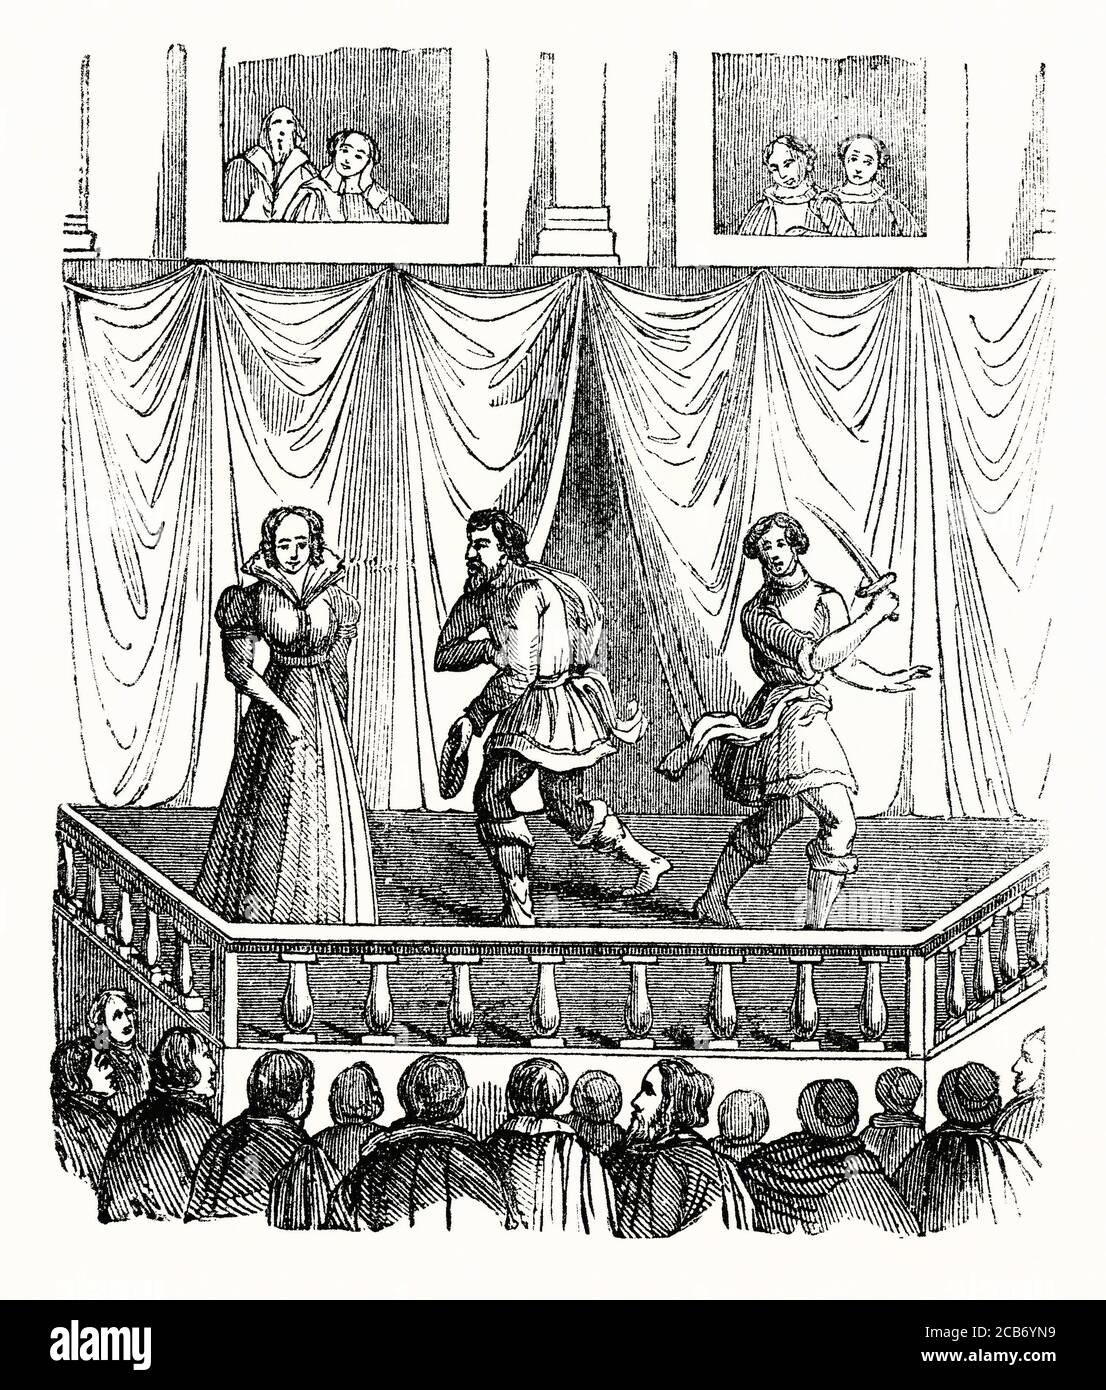 Ein alter Stich, der ein Stück zeigt, das im Mittelalter in England, Großbritannien, aufgeführt wurde. Das Theaterpublikum musste oft unter freiem Himmel stehen (sie wurden als "Erdlinge" bezeichnet), während diejenigen, die es sich leisten konnten, sich hinsetzen und von einem Balkon aus (hier im Hintergrund) zuschauen konnten. Stockfoto